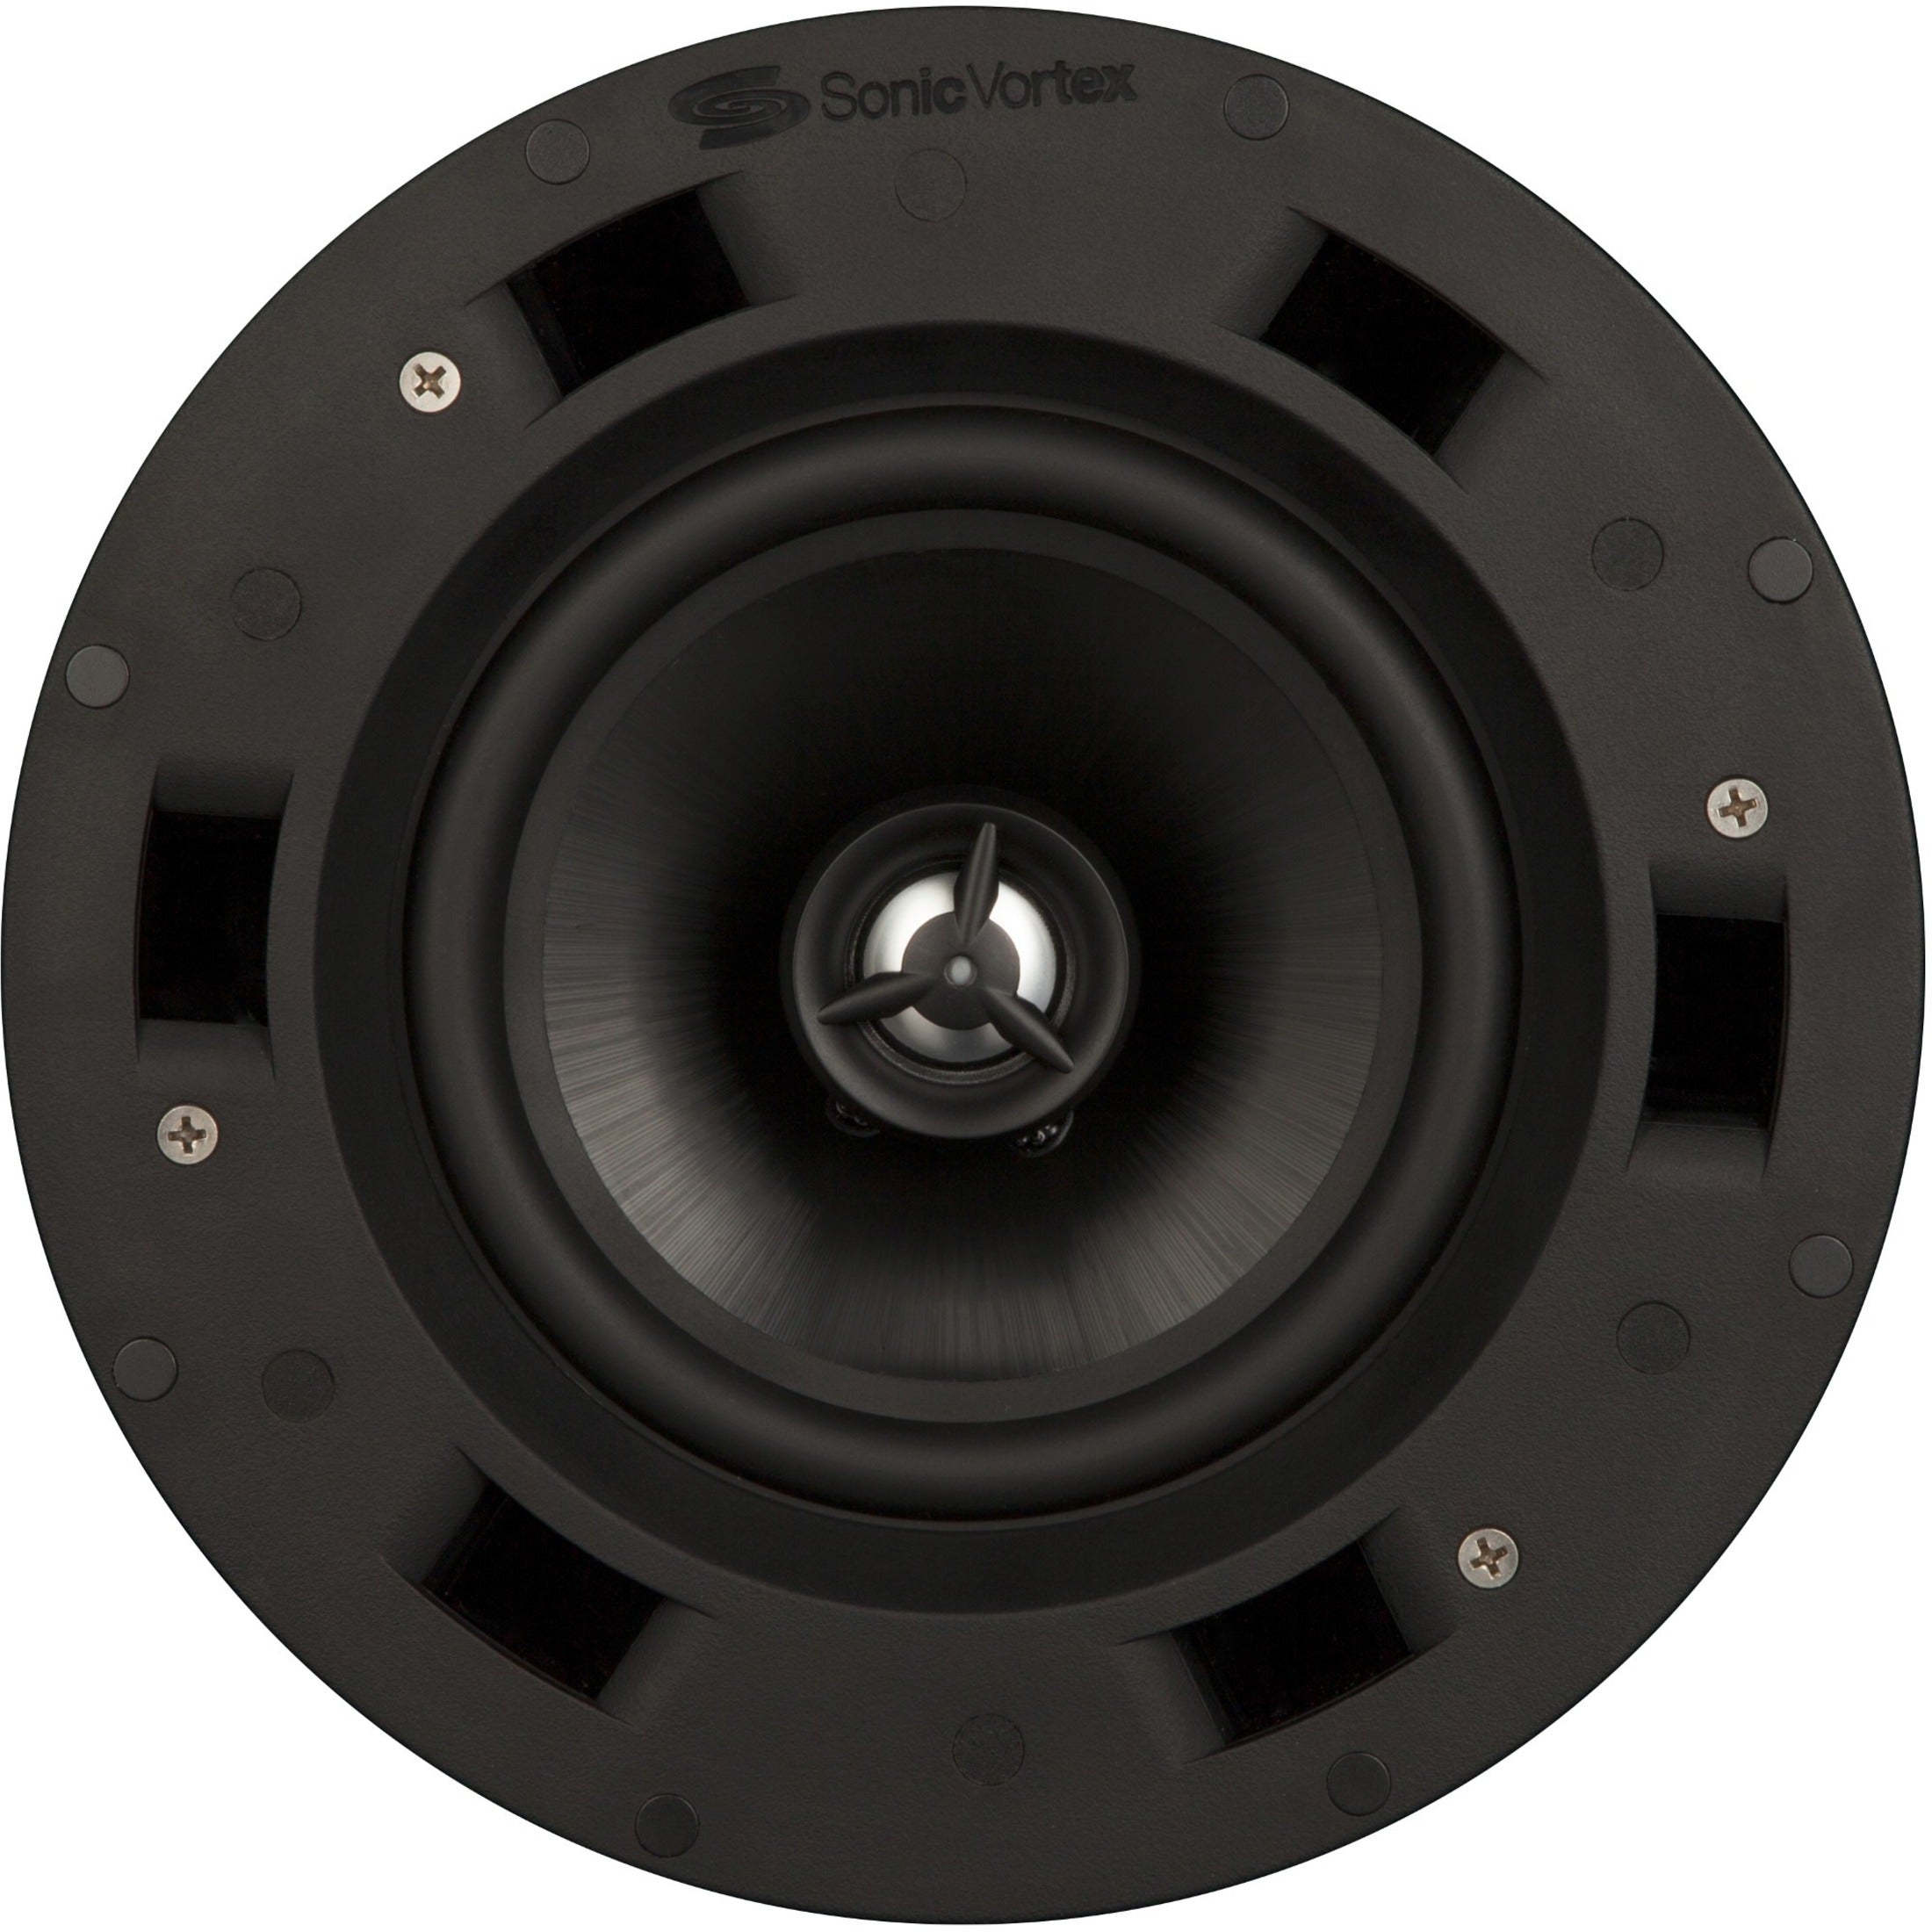 Beale TIC651 2-way In-ceiling Speaker - 5W RMS, Lifetime Warranty